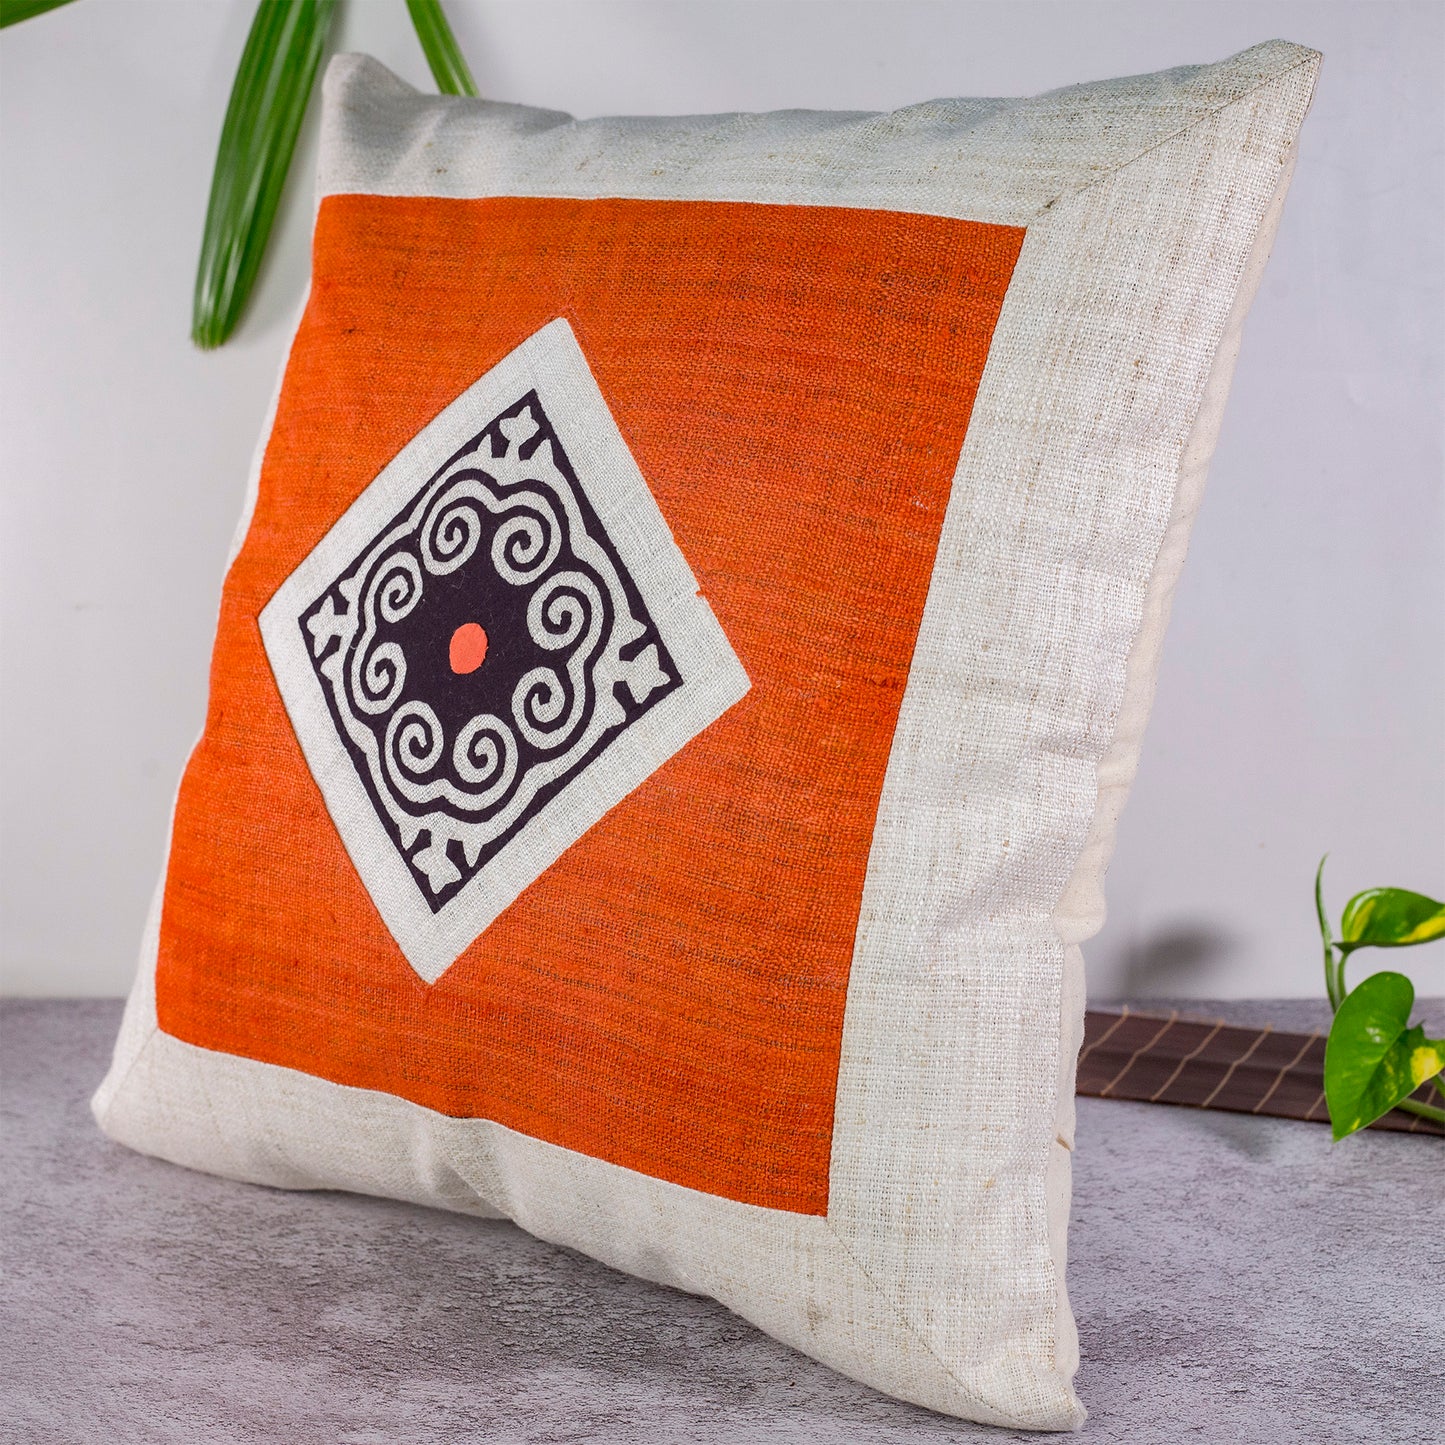 Hemp Cushion Cover - H'mong pattern, orange hemp at center